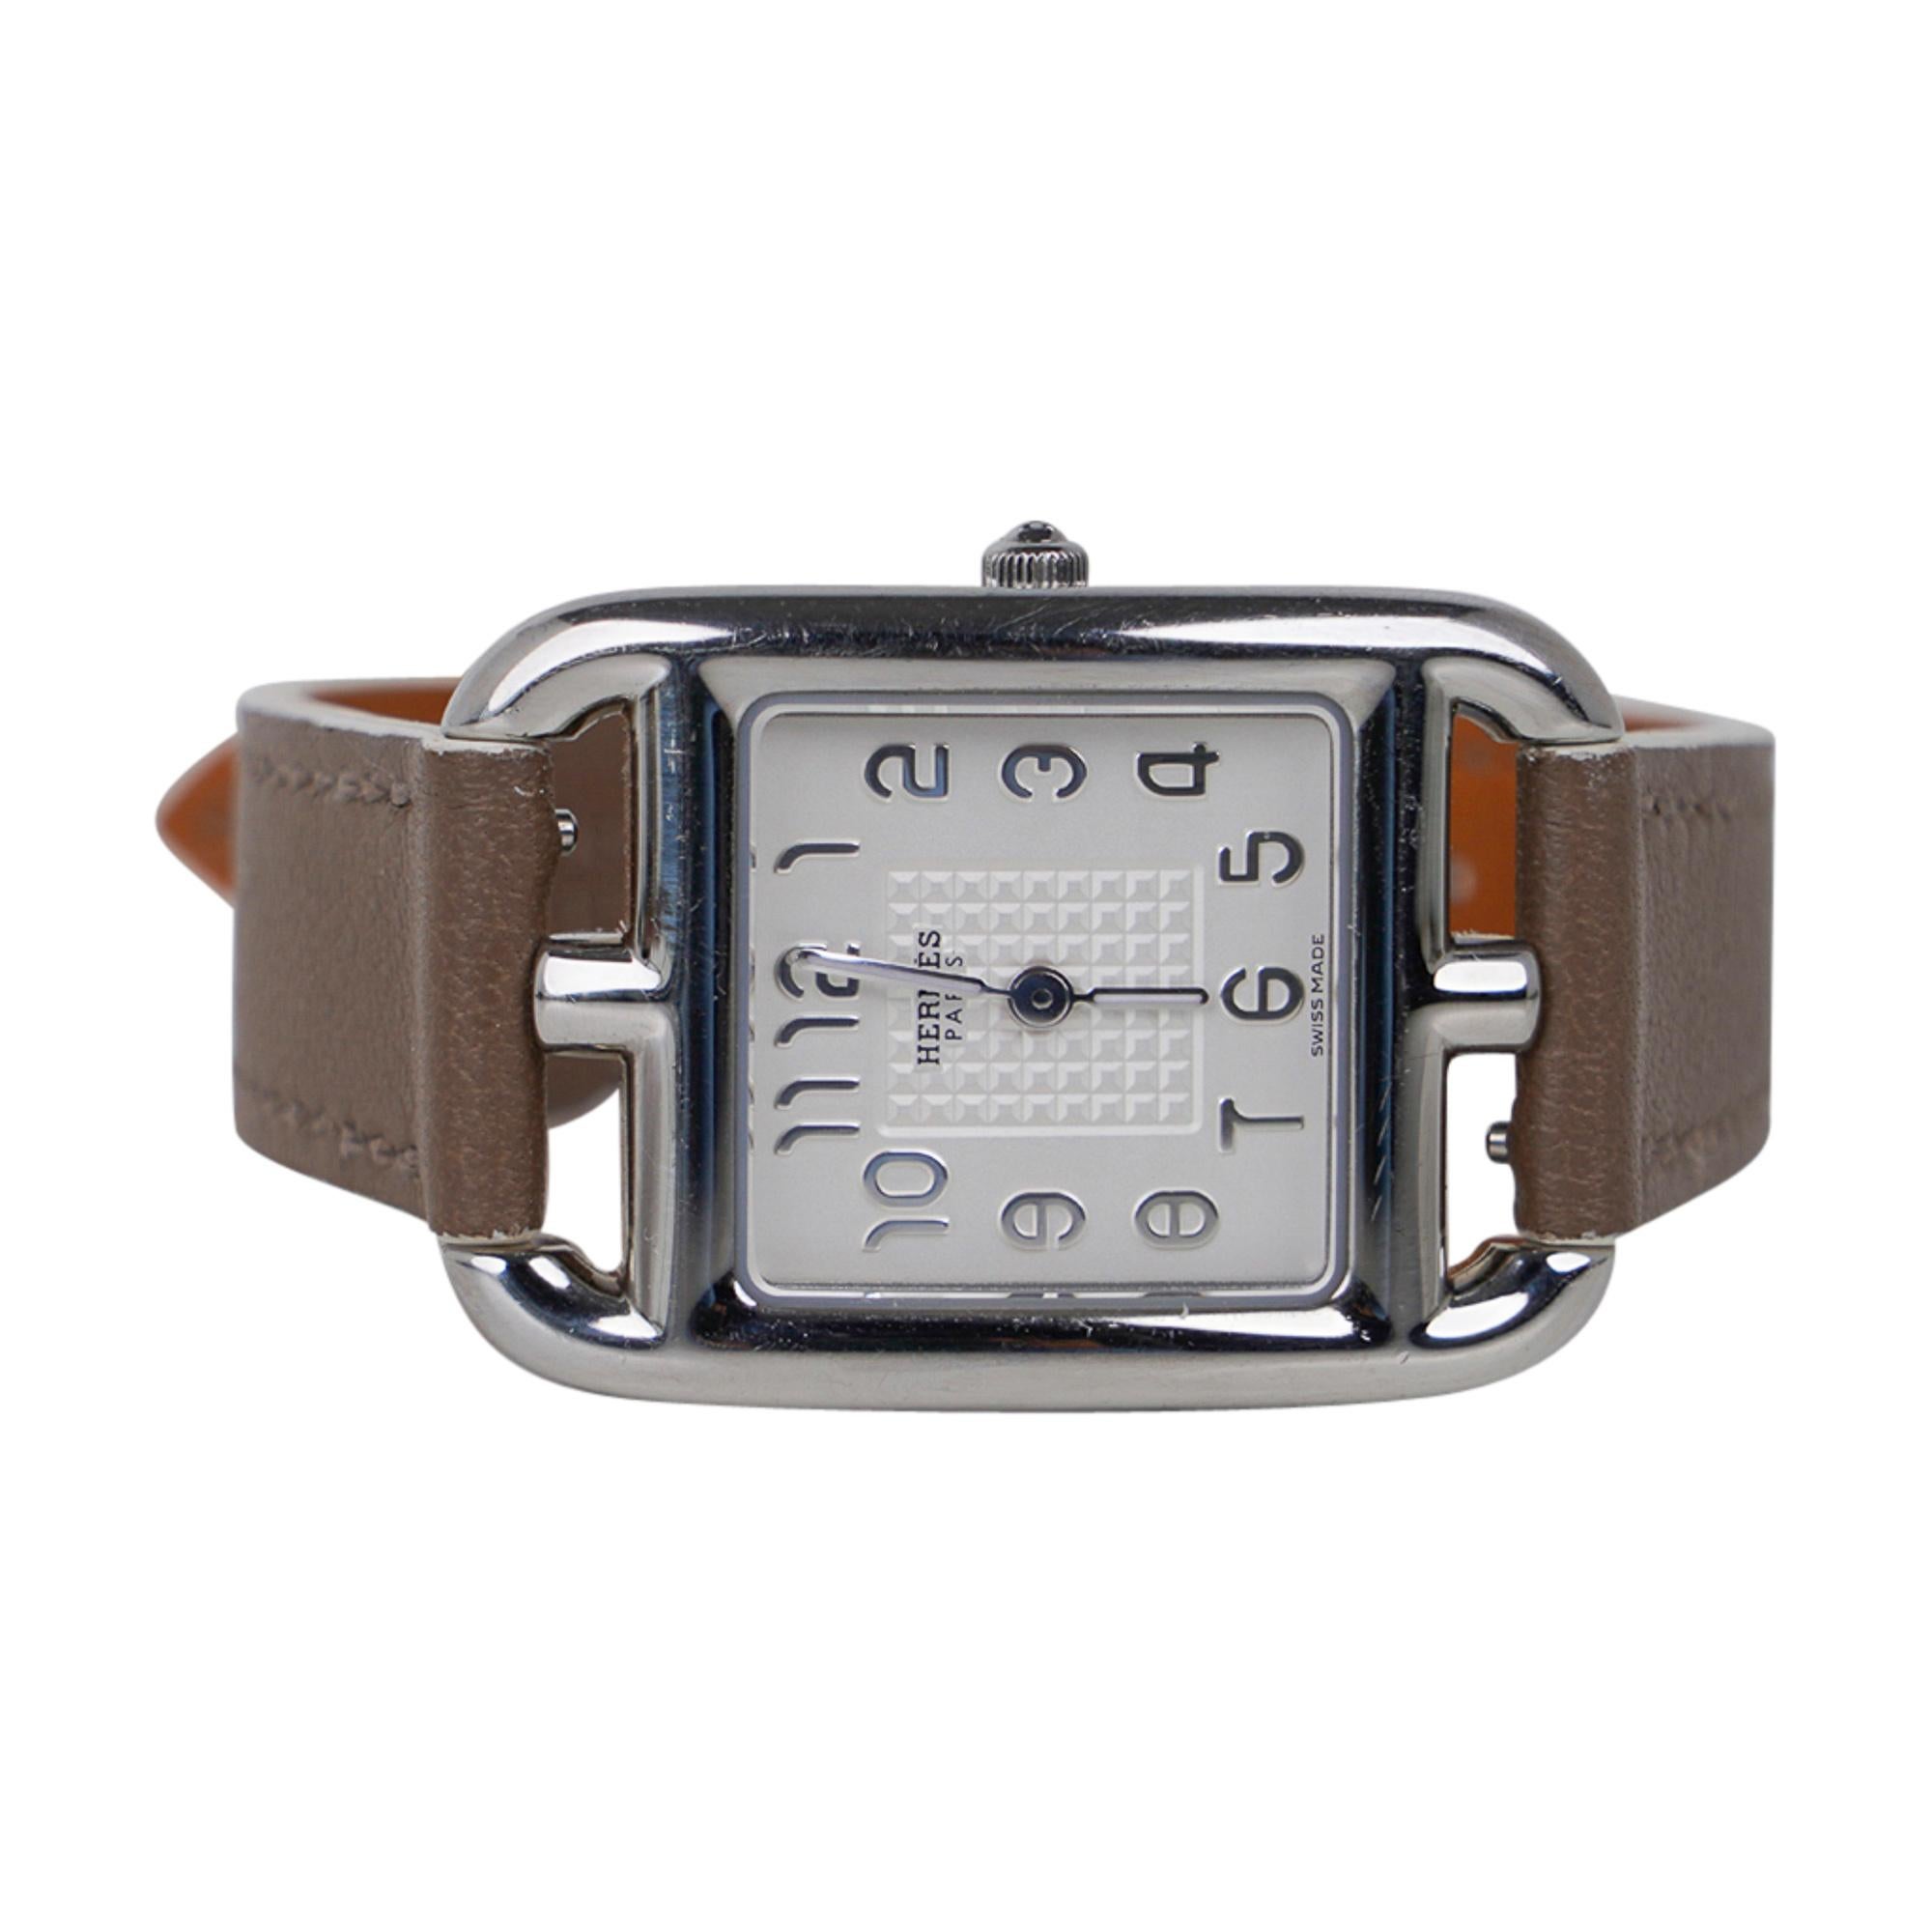 Garantie d'authenticité de la montre Hermès Cape Cod.
La montre en acier de 23 mm x 23 mm est dotée d'un cadran opalin argenté.
Le bracelet interchangeable est en veau Etoupe.
Mouvement à quartz fabriqué en Suisse.
Le Cape Cod s'inspire du motif